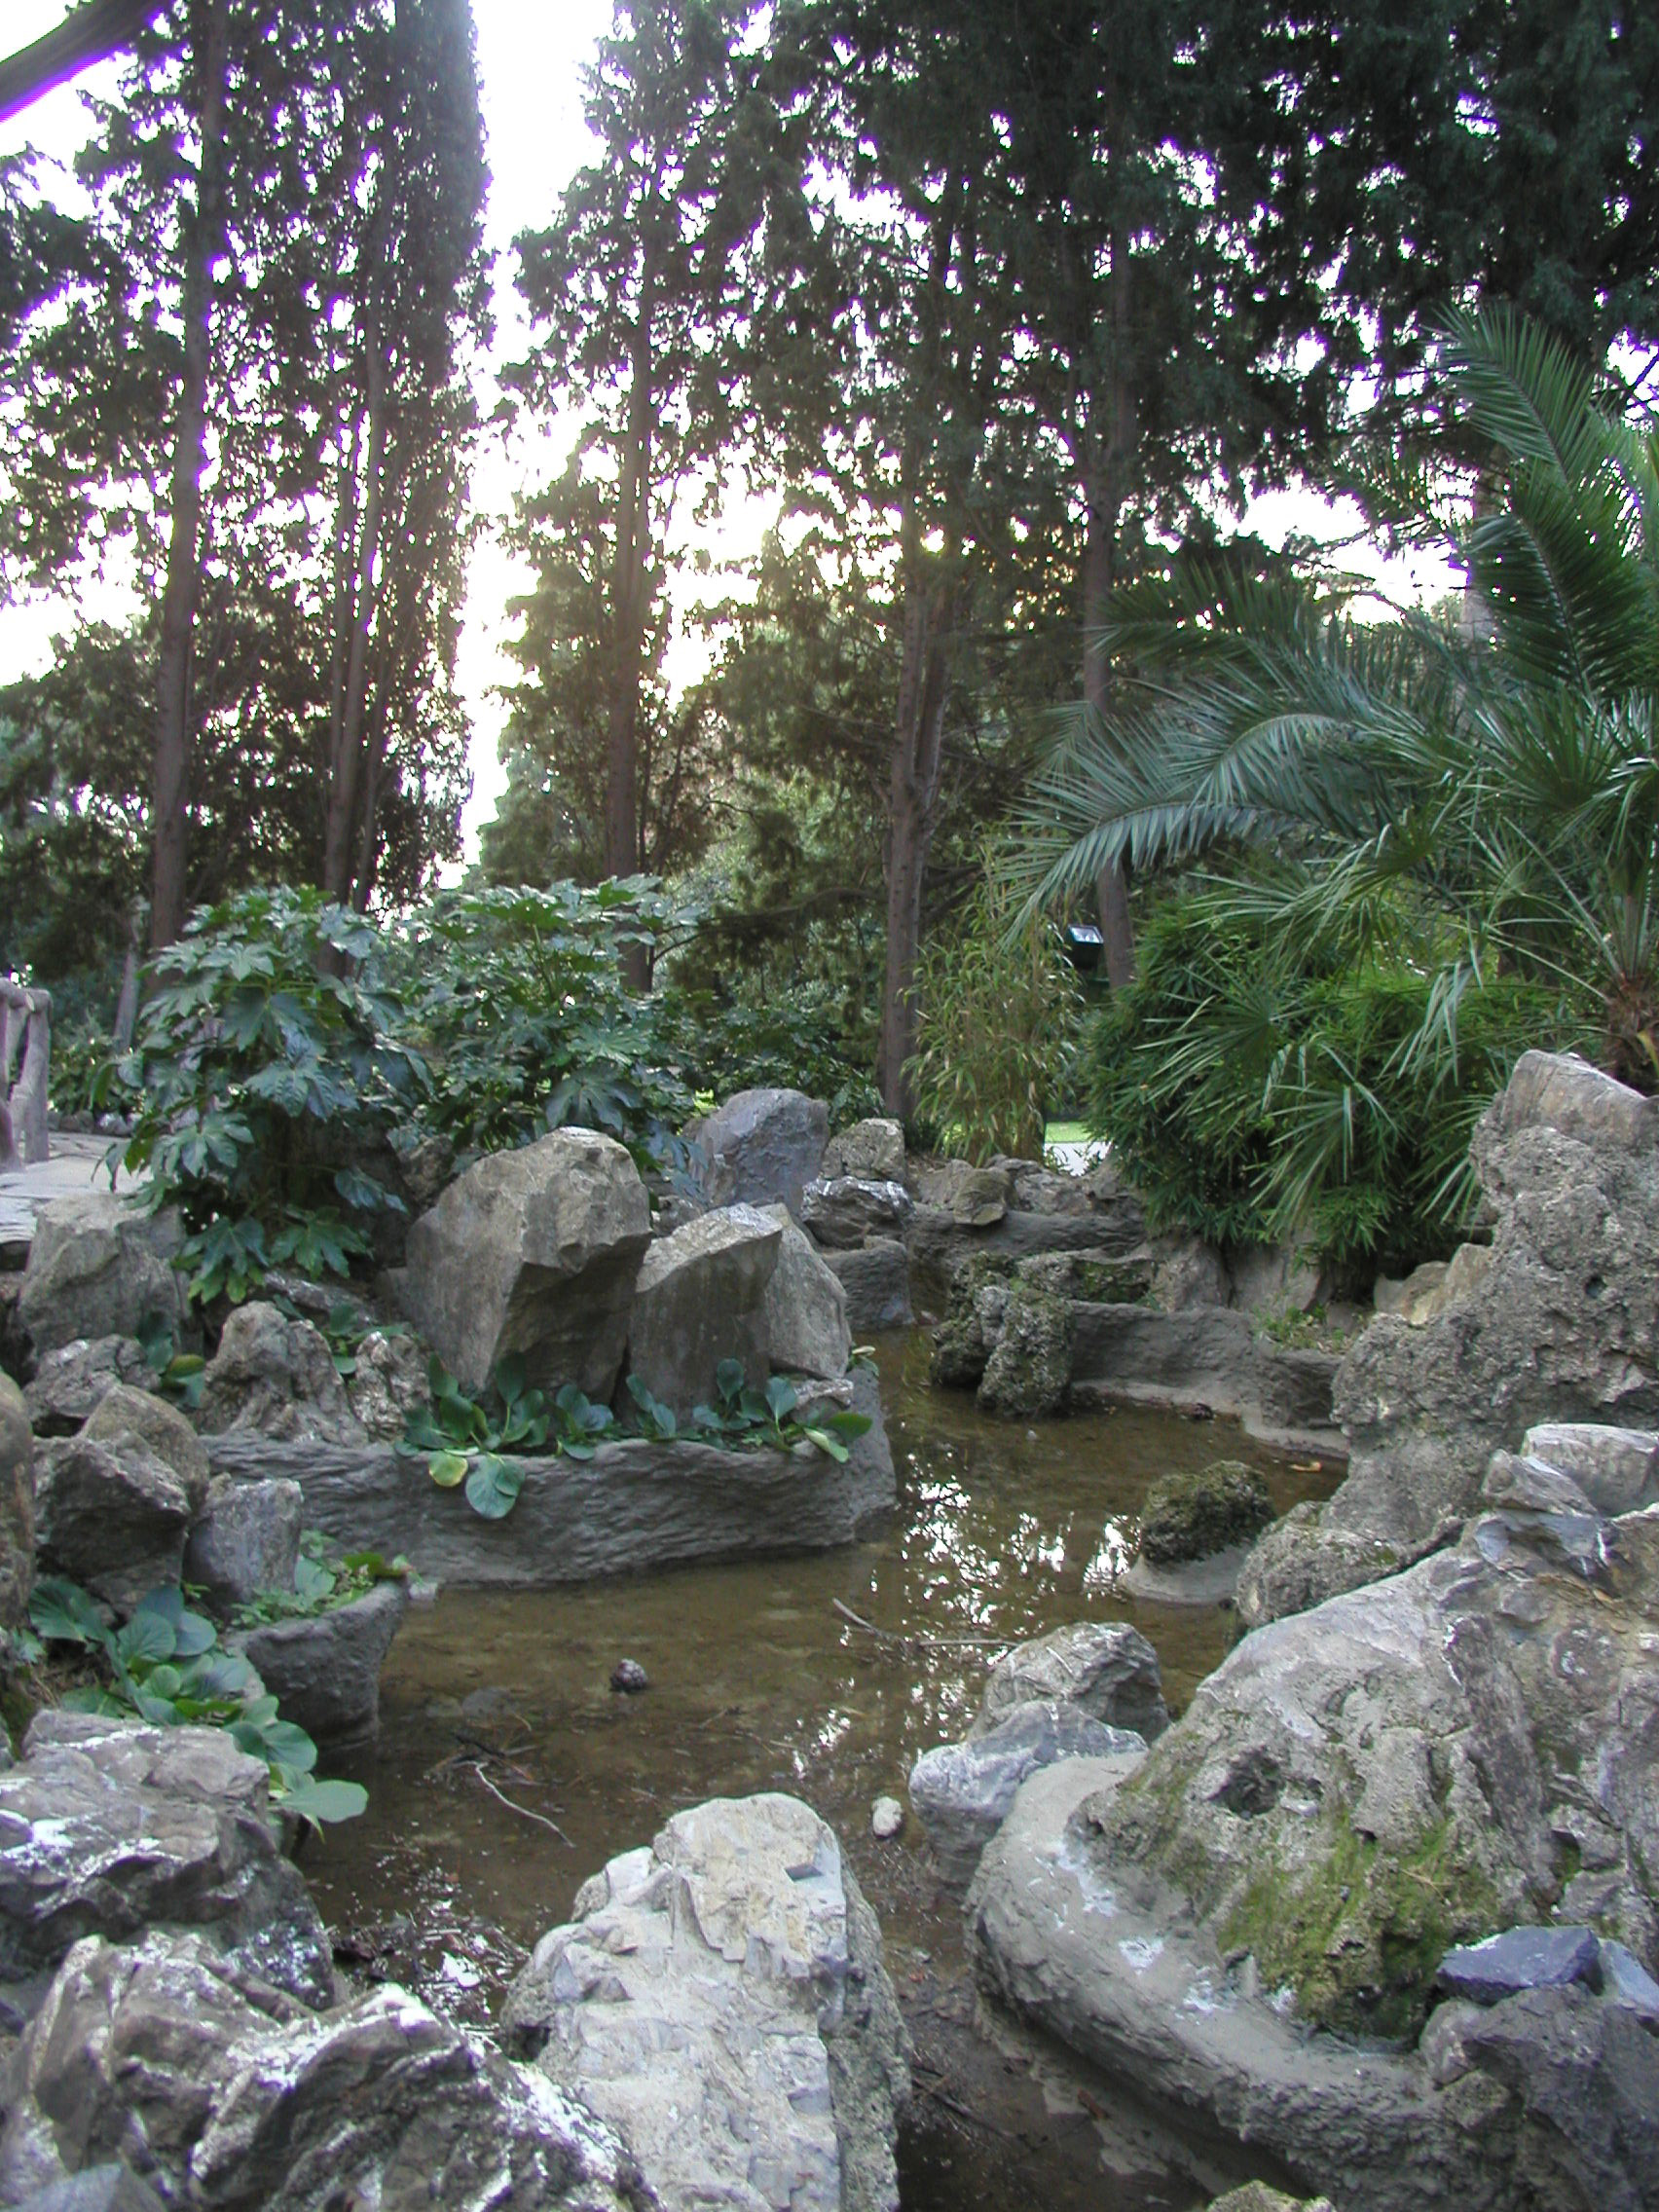 Parchi di Nervi,il ruscello nel giardino romantico